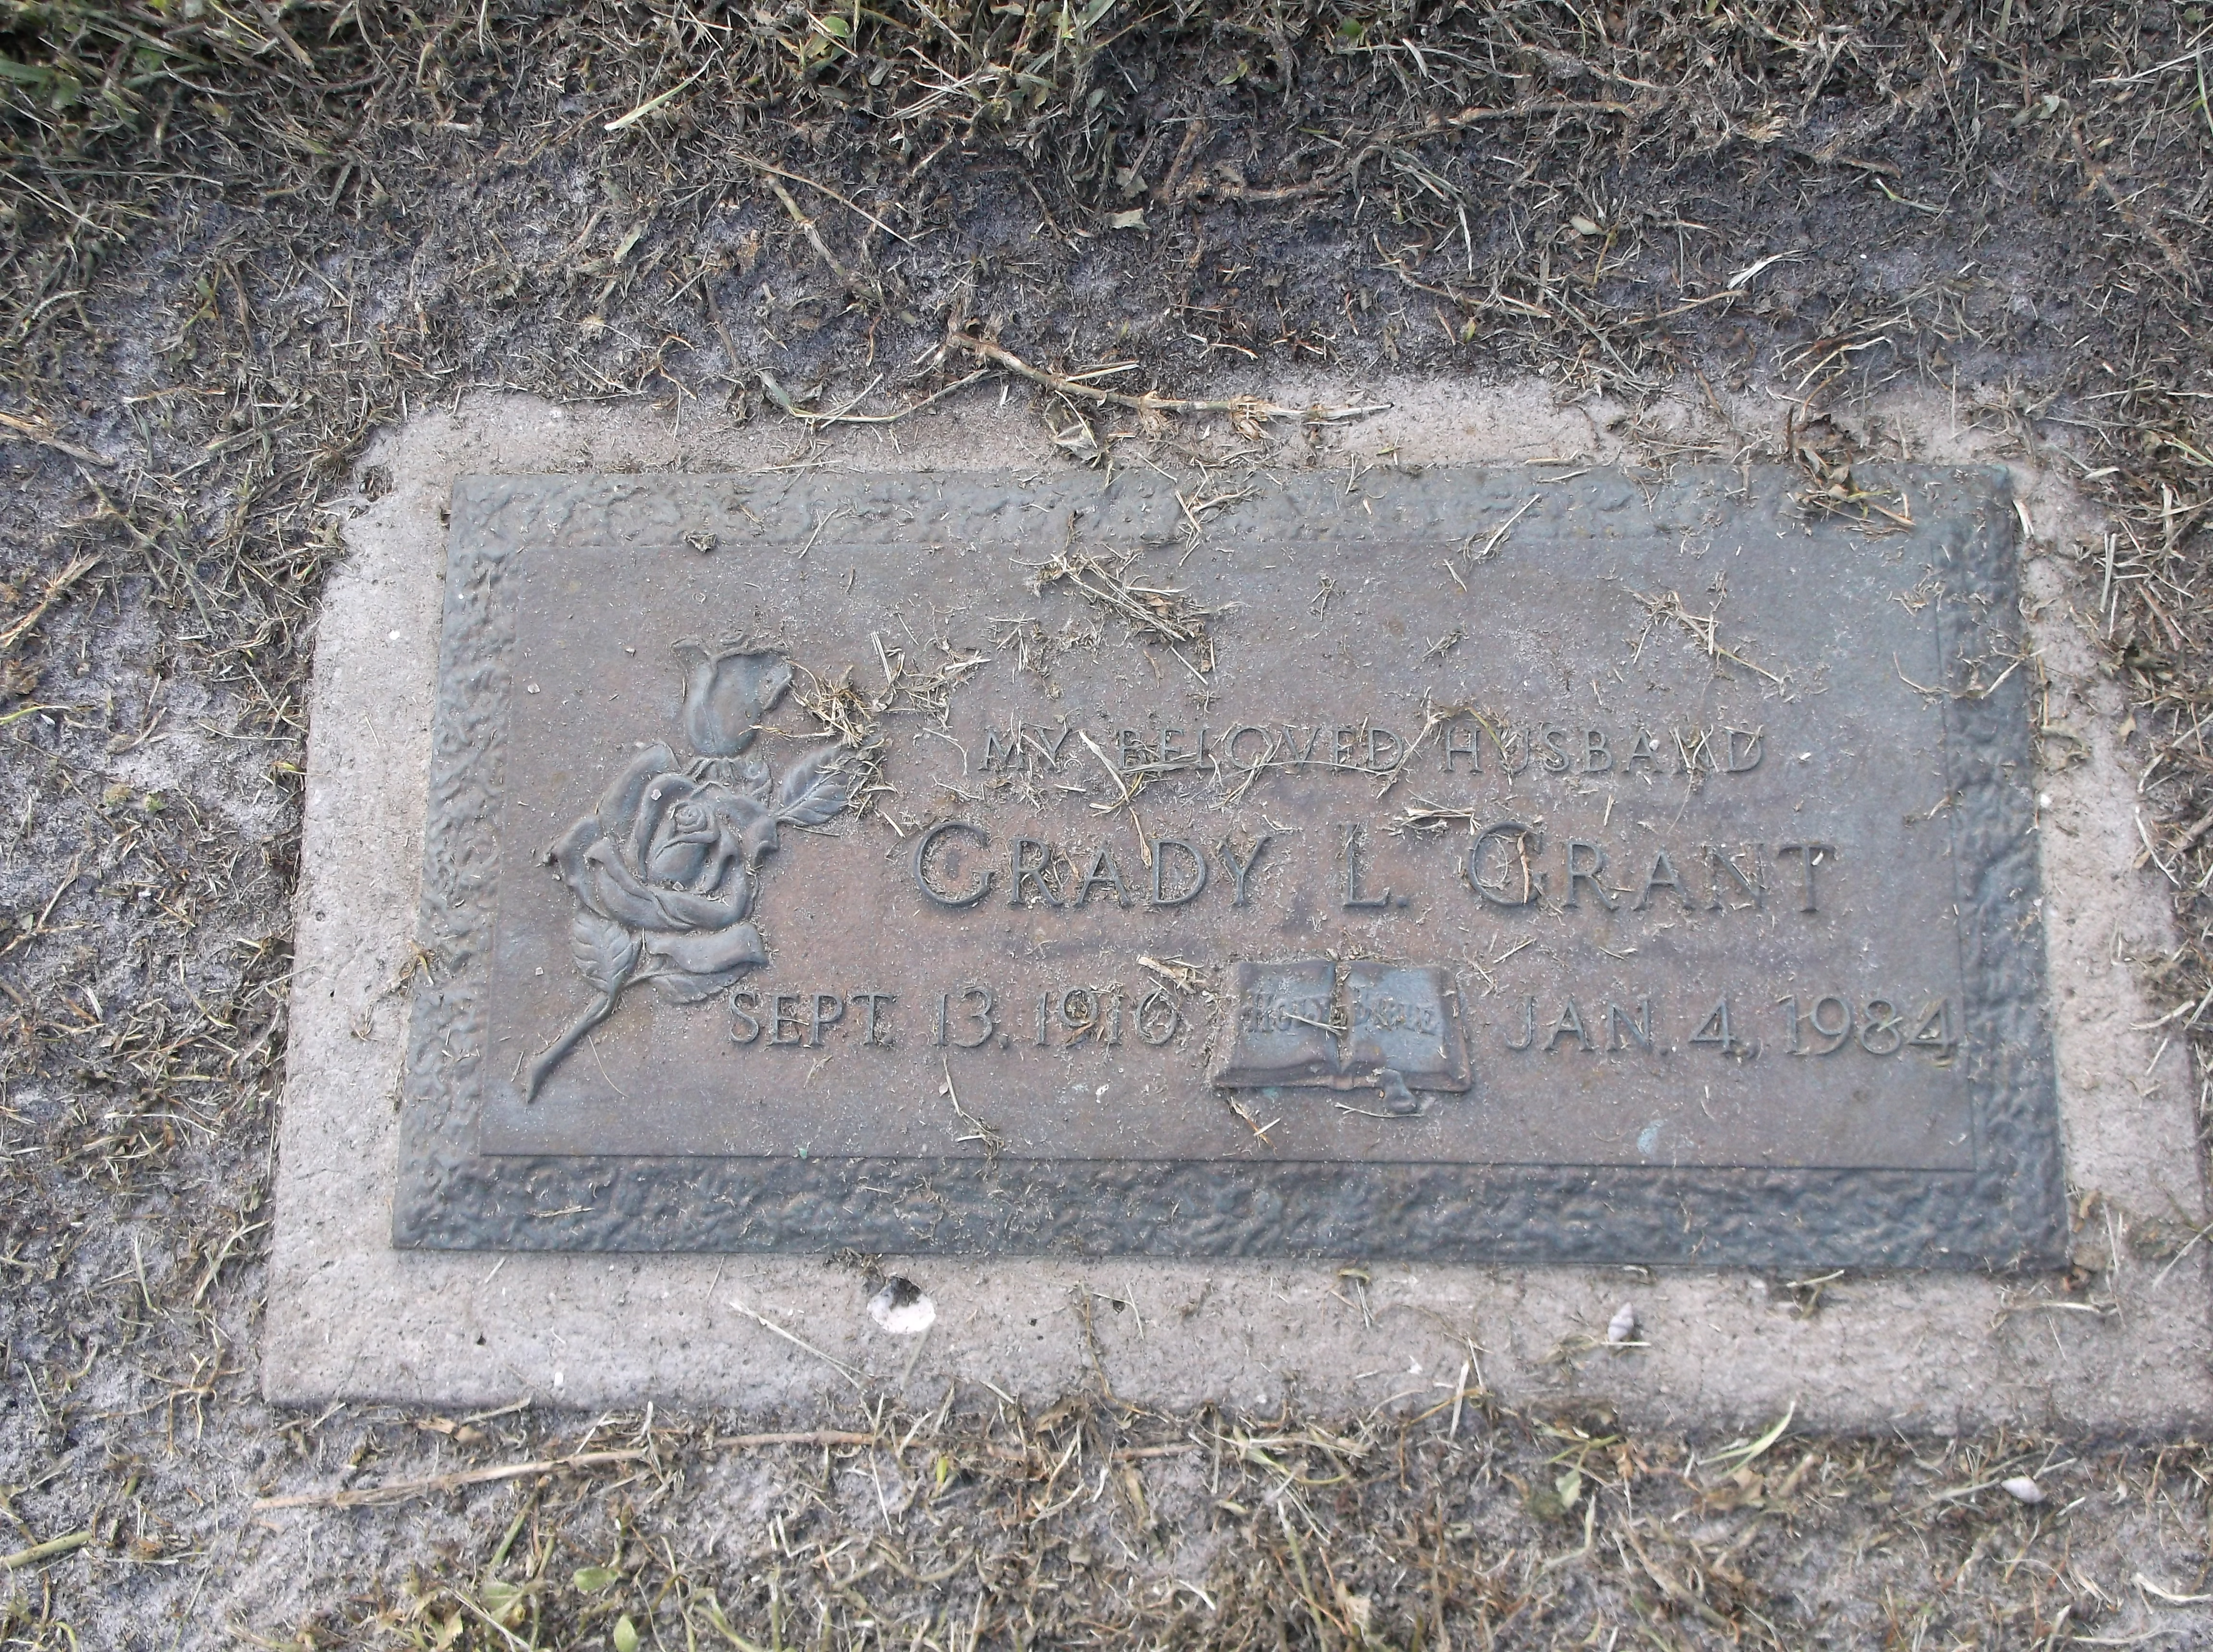 Grady L Grant